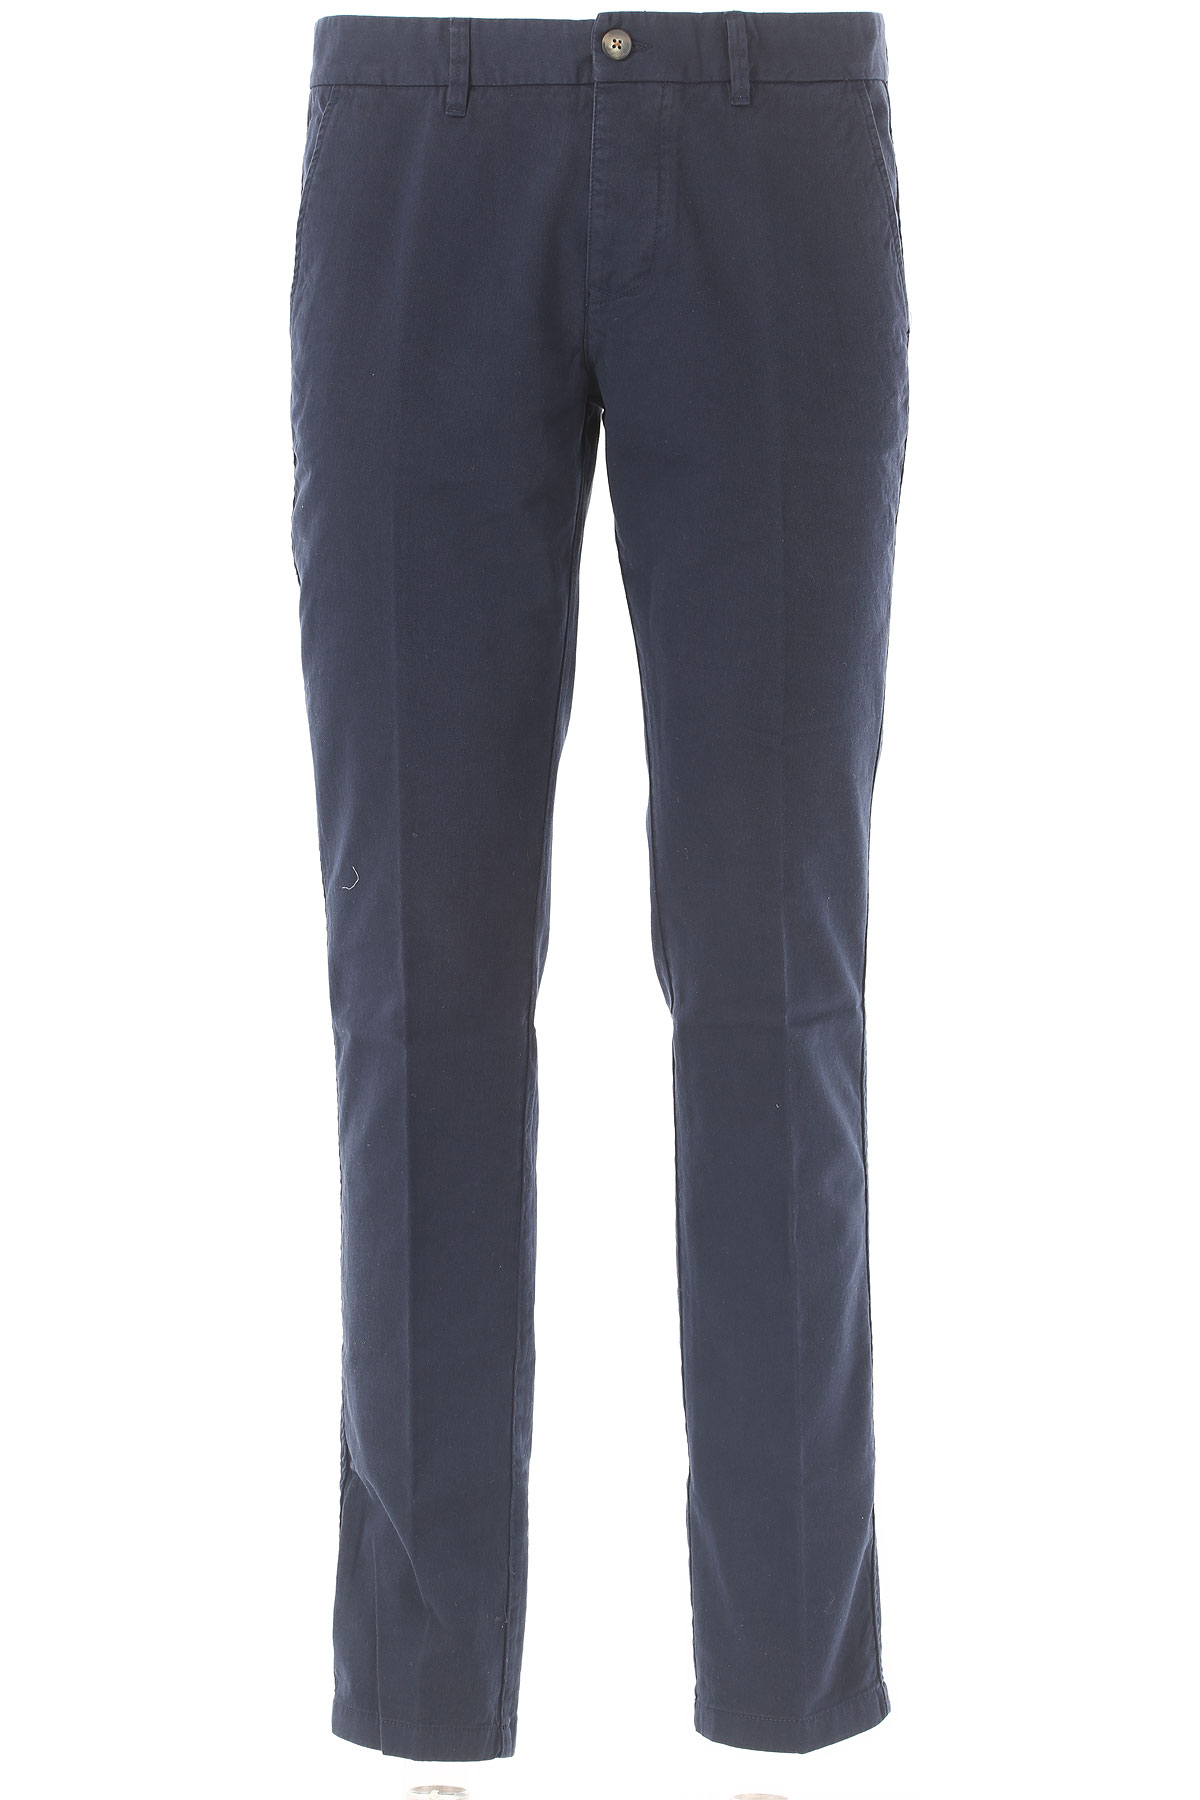 Blauer Pantalon Homme Outlet, Bleu, Coton, 2017, 48 54